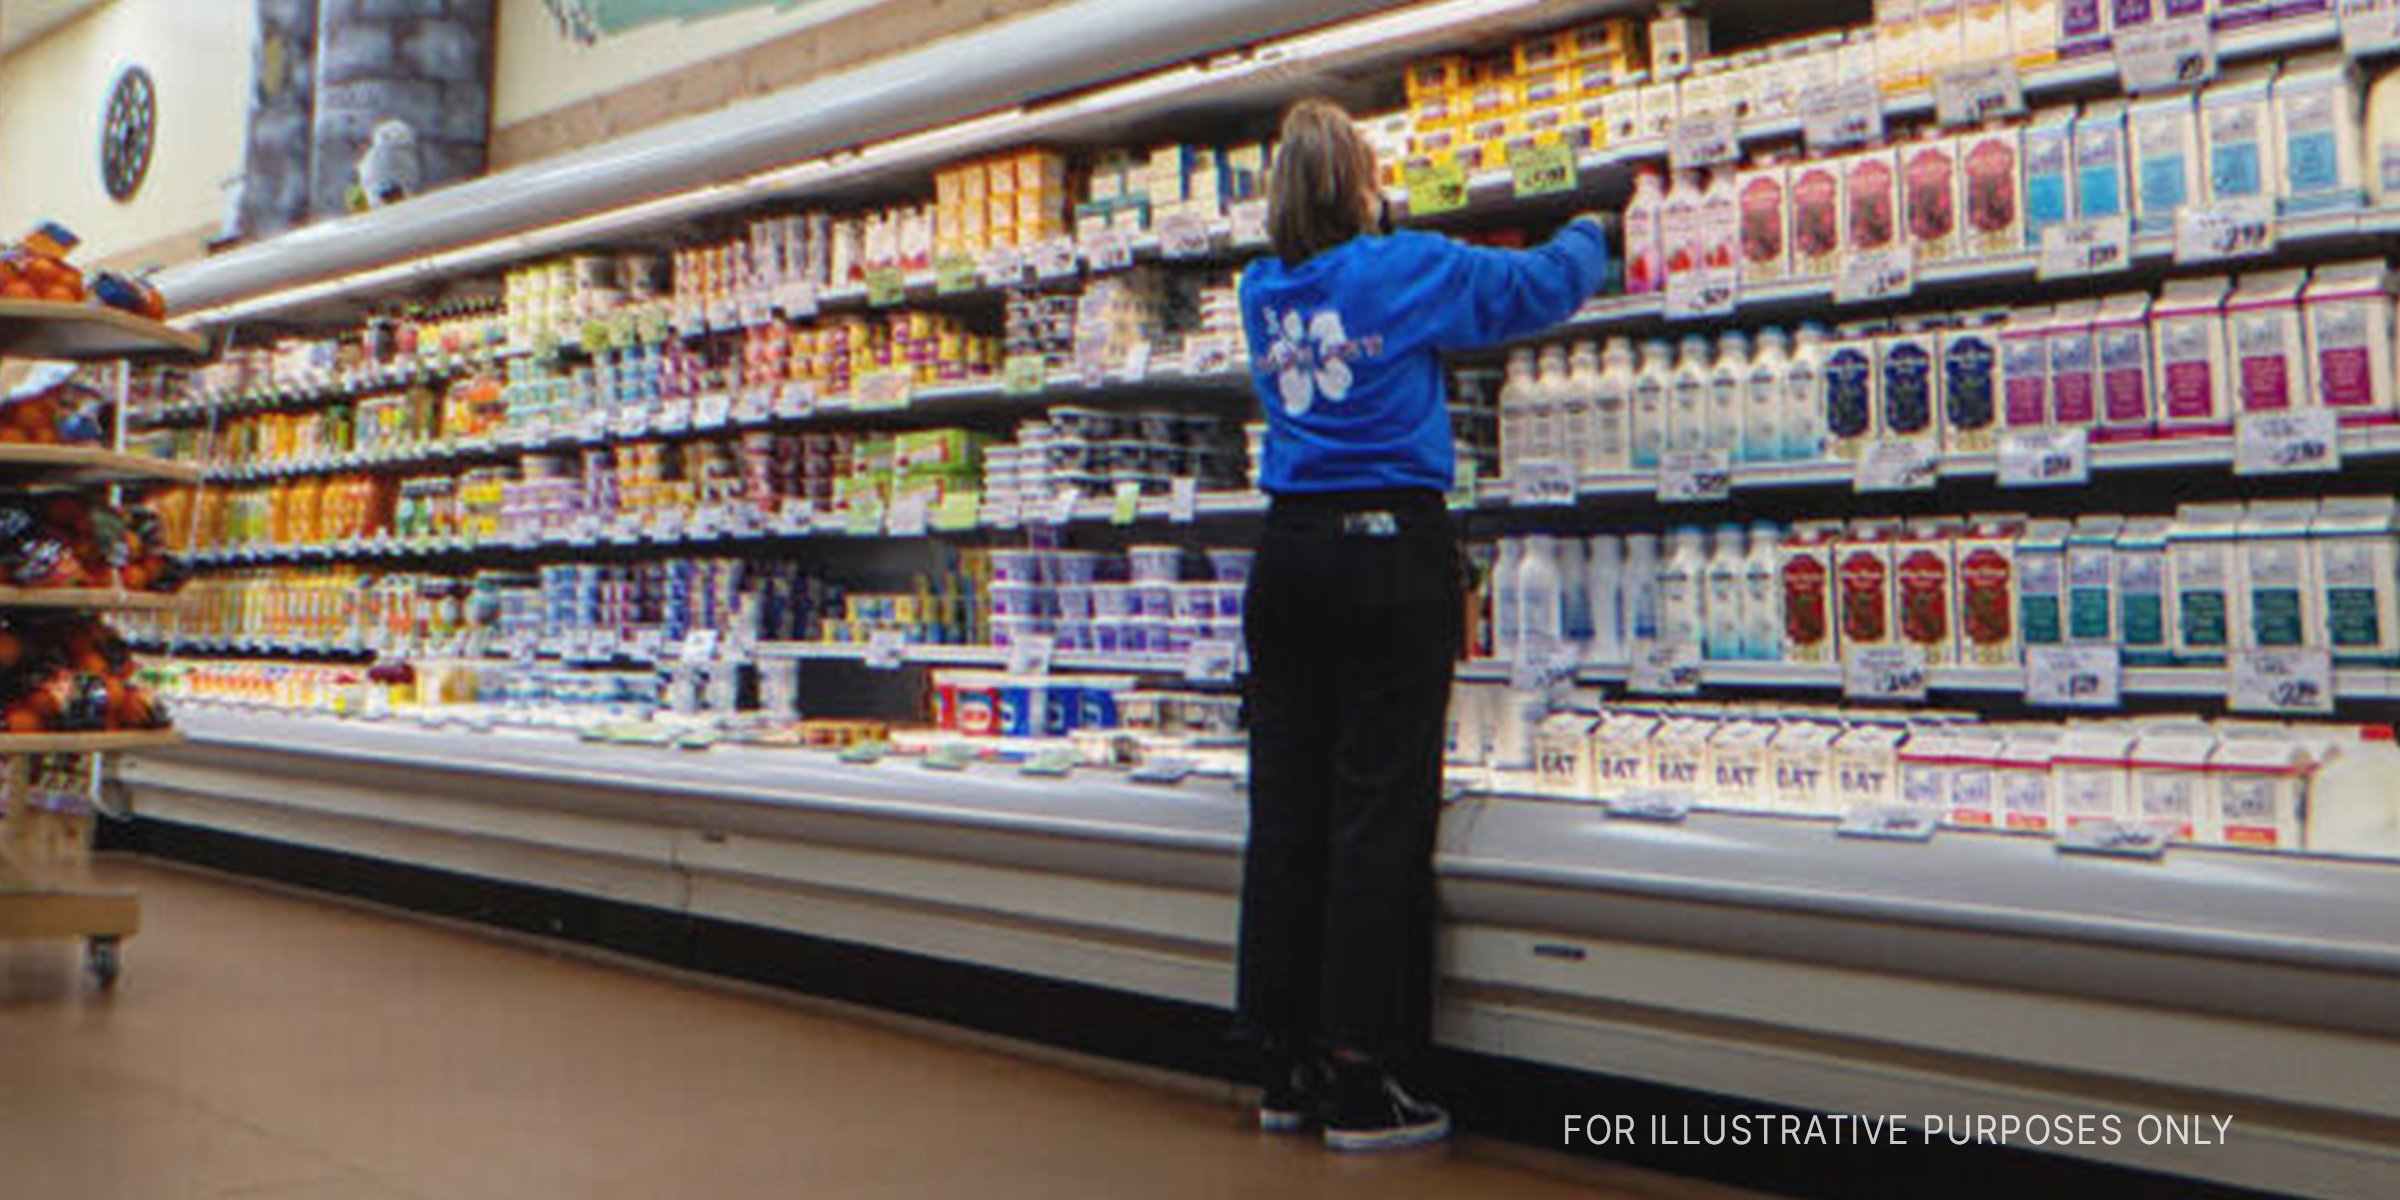 Eine Frau arbeitet in einem Lebensmittelladen. | Quelle: Shutterstock